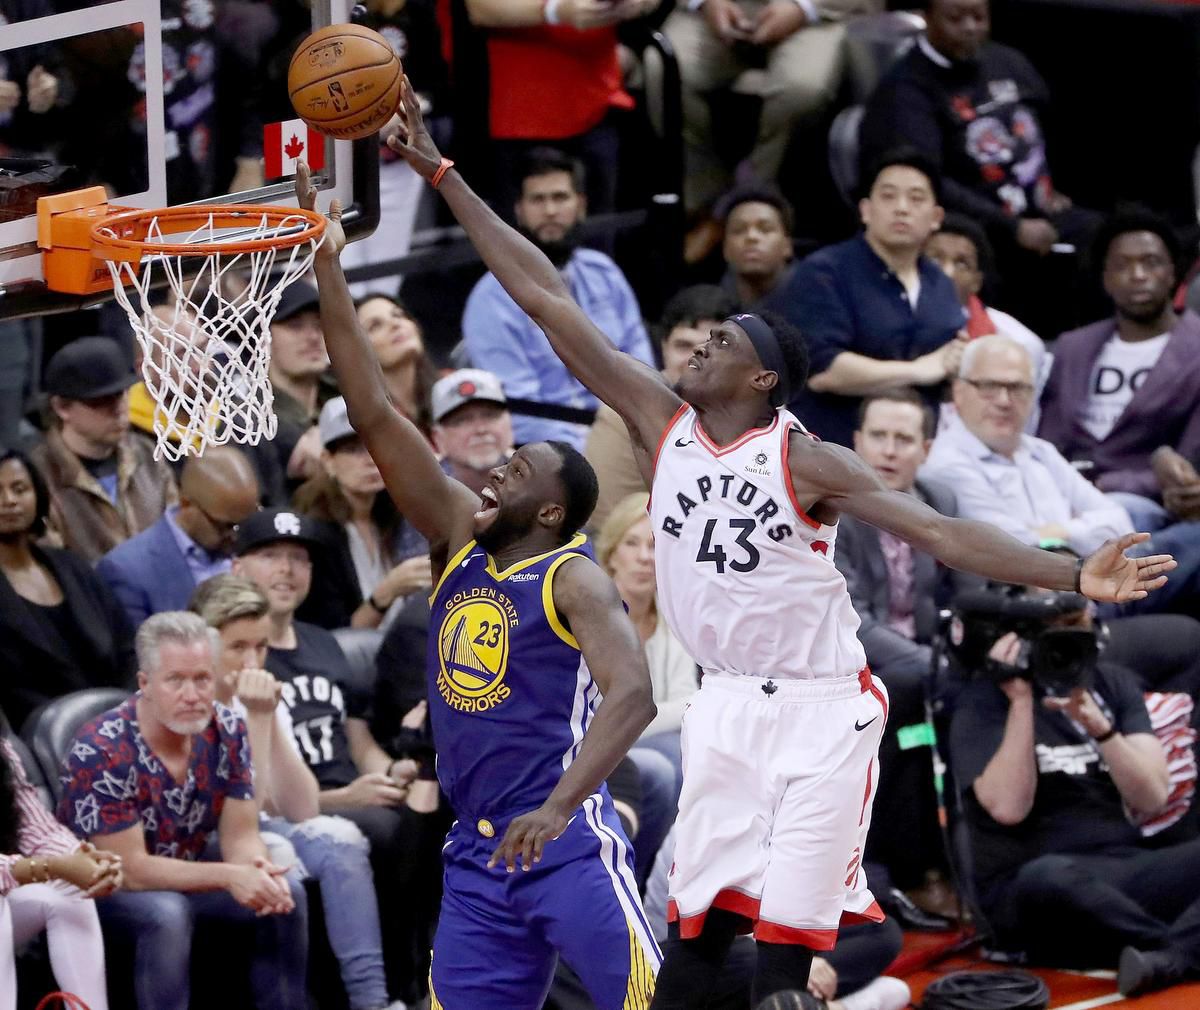 Nhận định NBA: Toronto Raptors vs Golden State Warriors (ngày 3/6, 7h00)